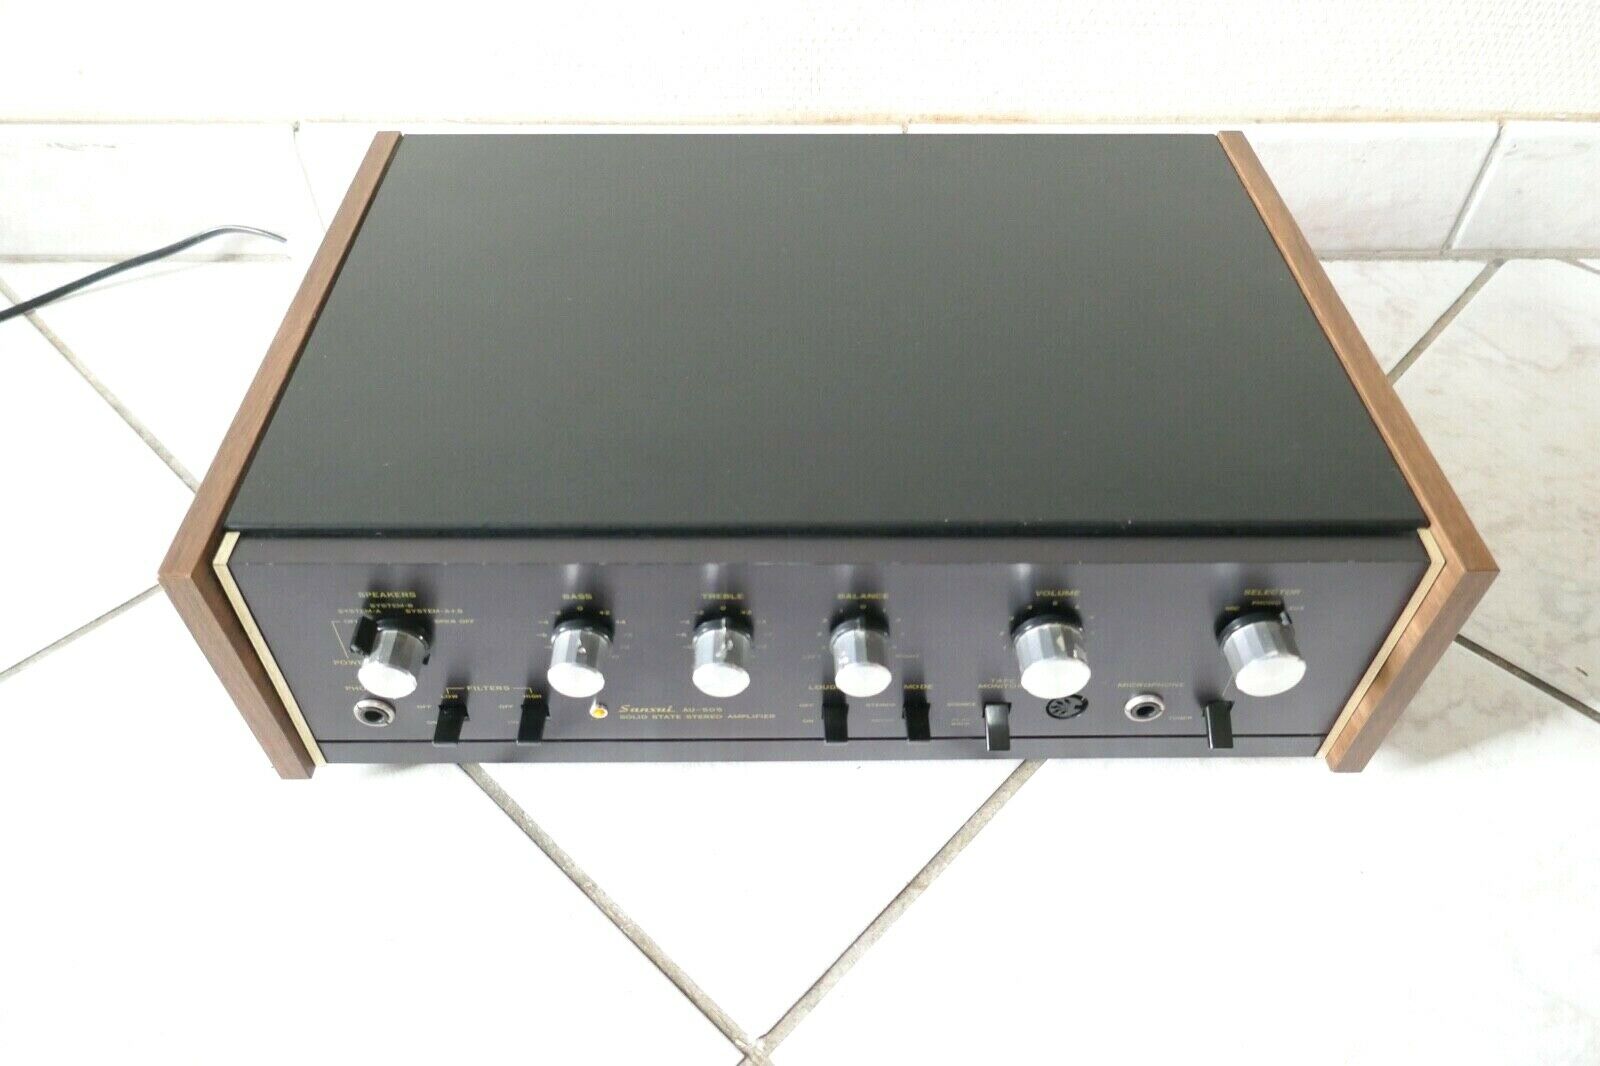 amplificateur amplifier sansui au-505 vintage occasion